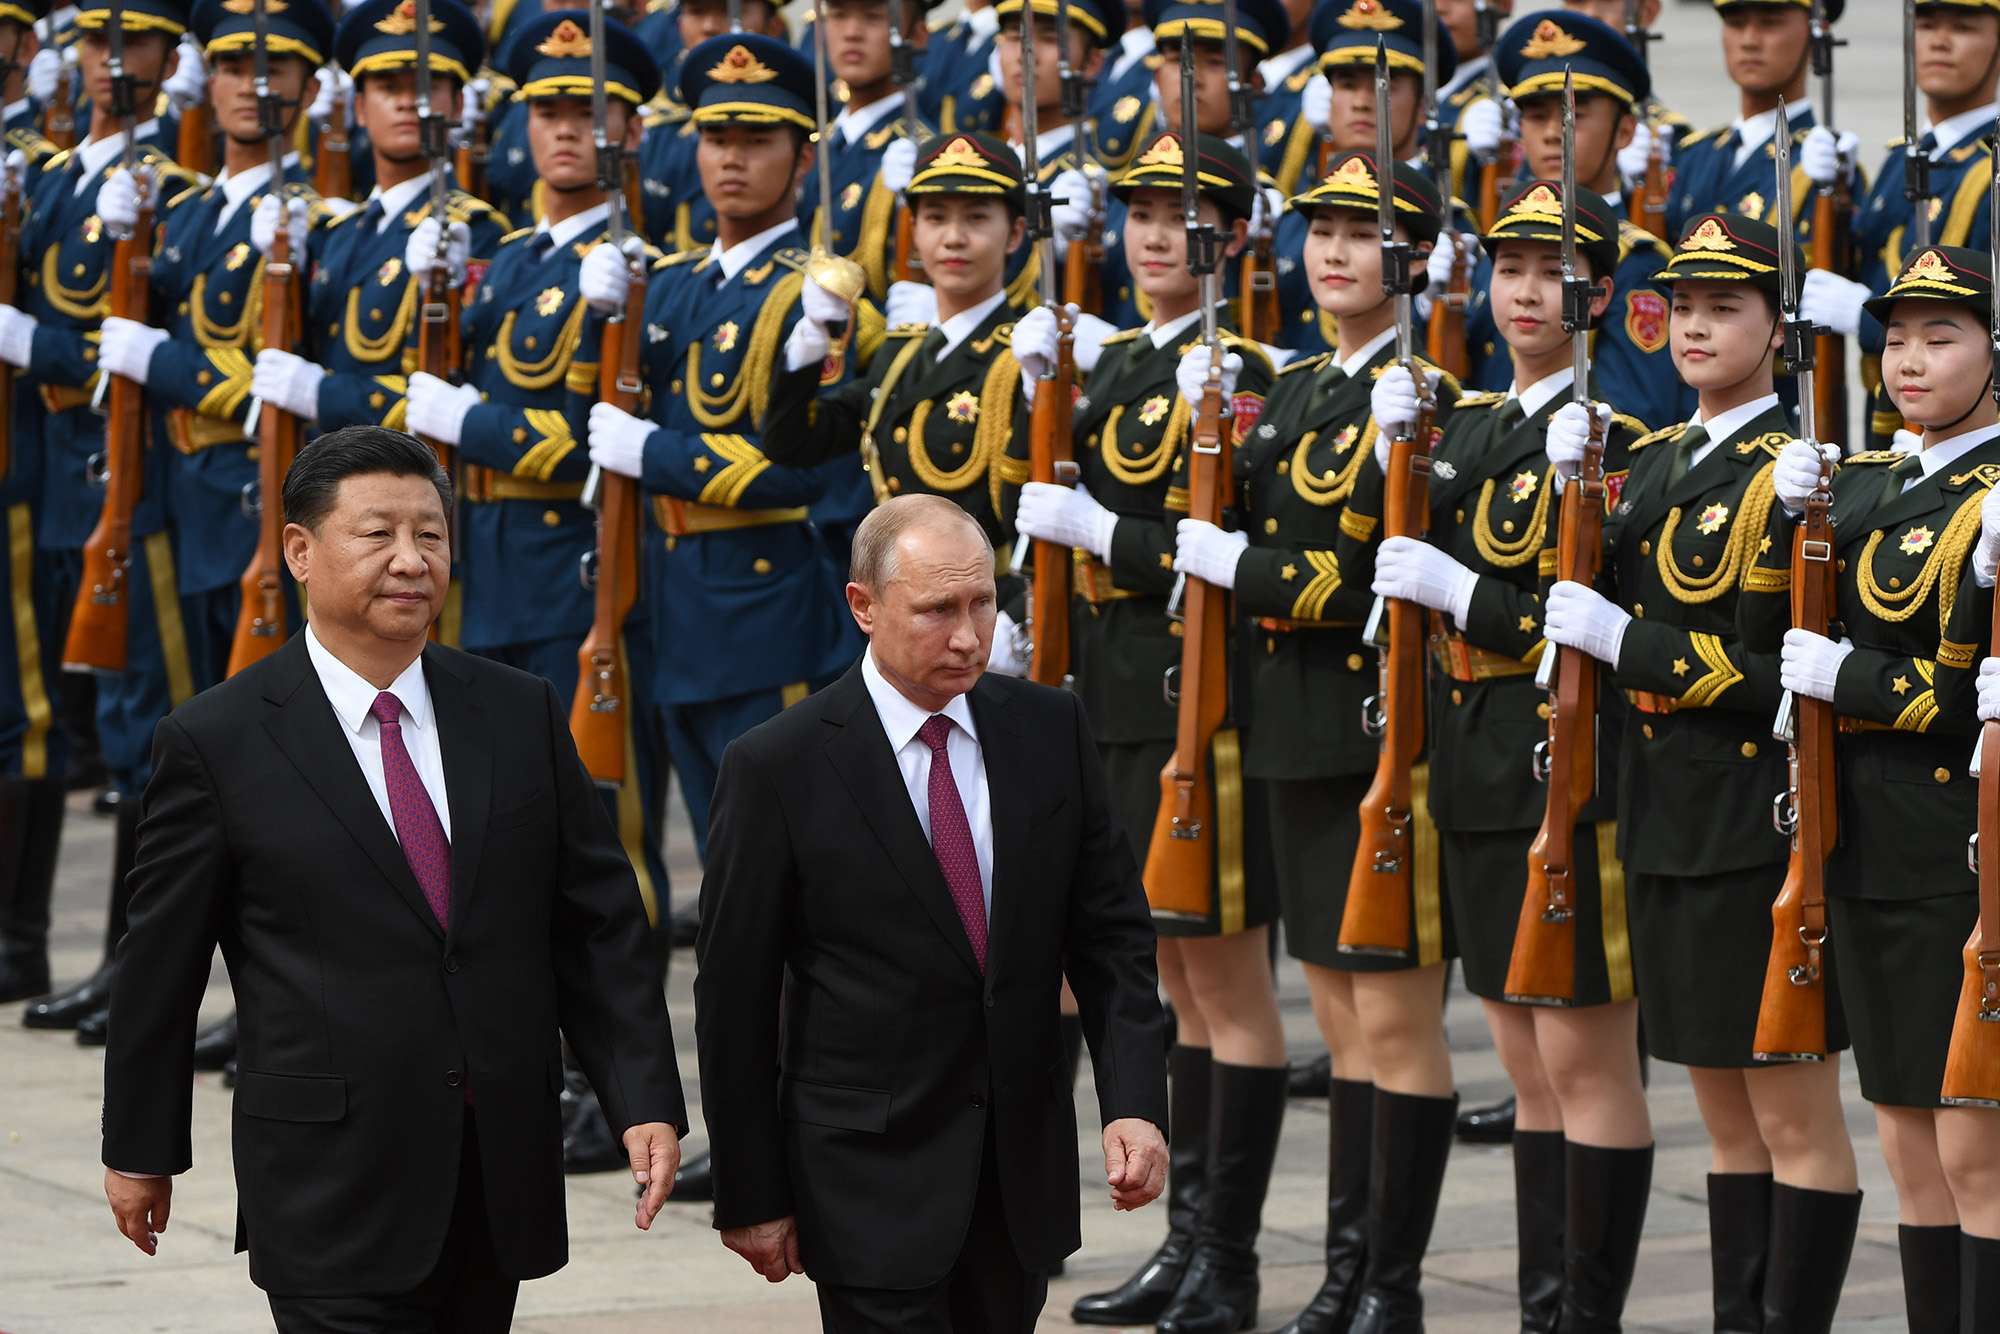 रूसी राष्ट्रपति व्लादिमीर पुतिन 8 जून, 2018 को बीजिंग में ग्रेट हॉल ऑफ द पीपल के बाहर एक स्वागत समारोह के दौरान चीनी नेता शी जिनपिंग के साथ सैन्य सम्मान गार्ड की समीक्षा करते हैं। 